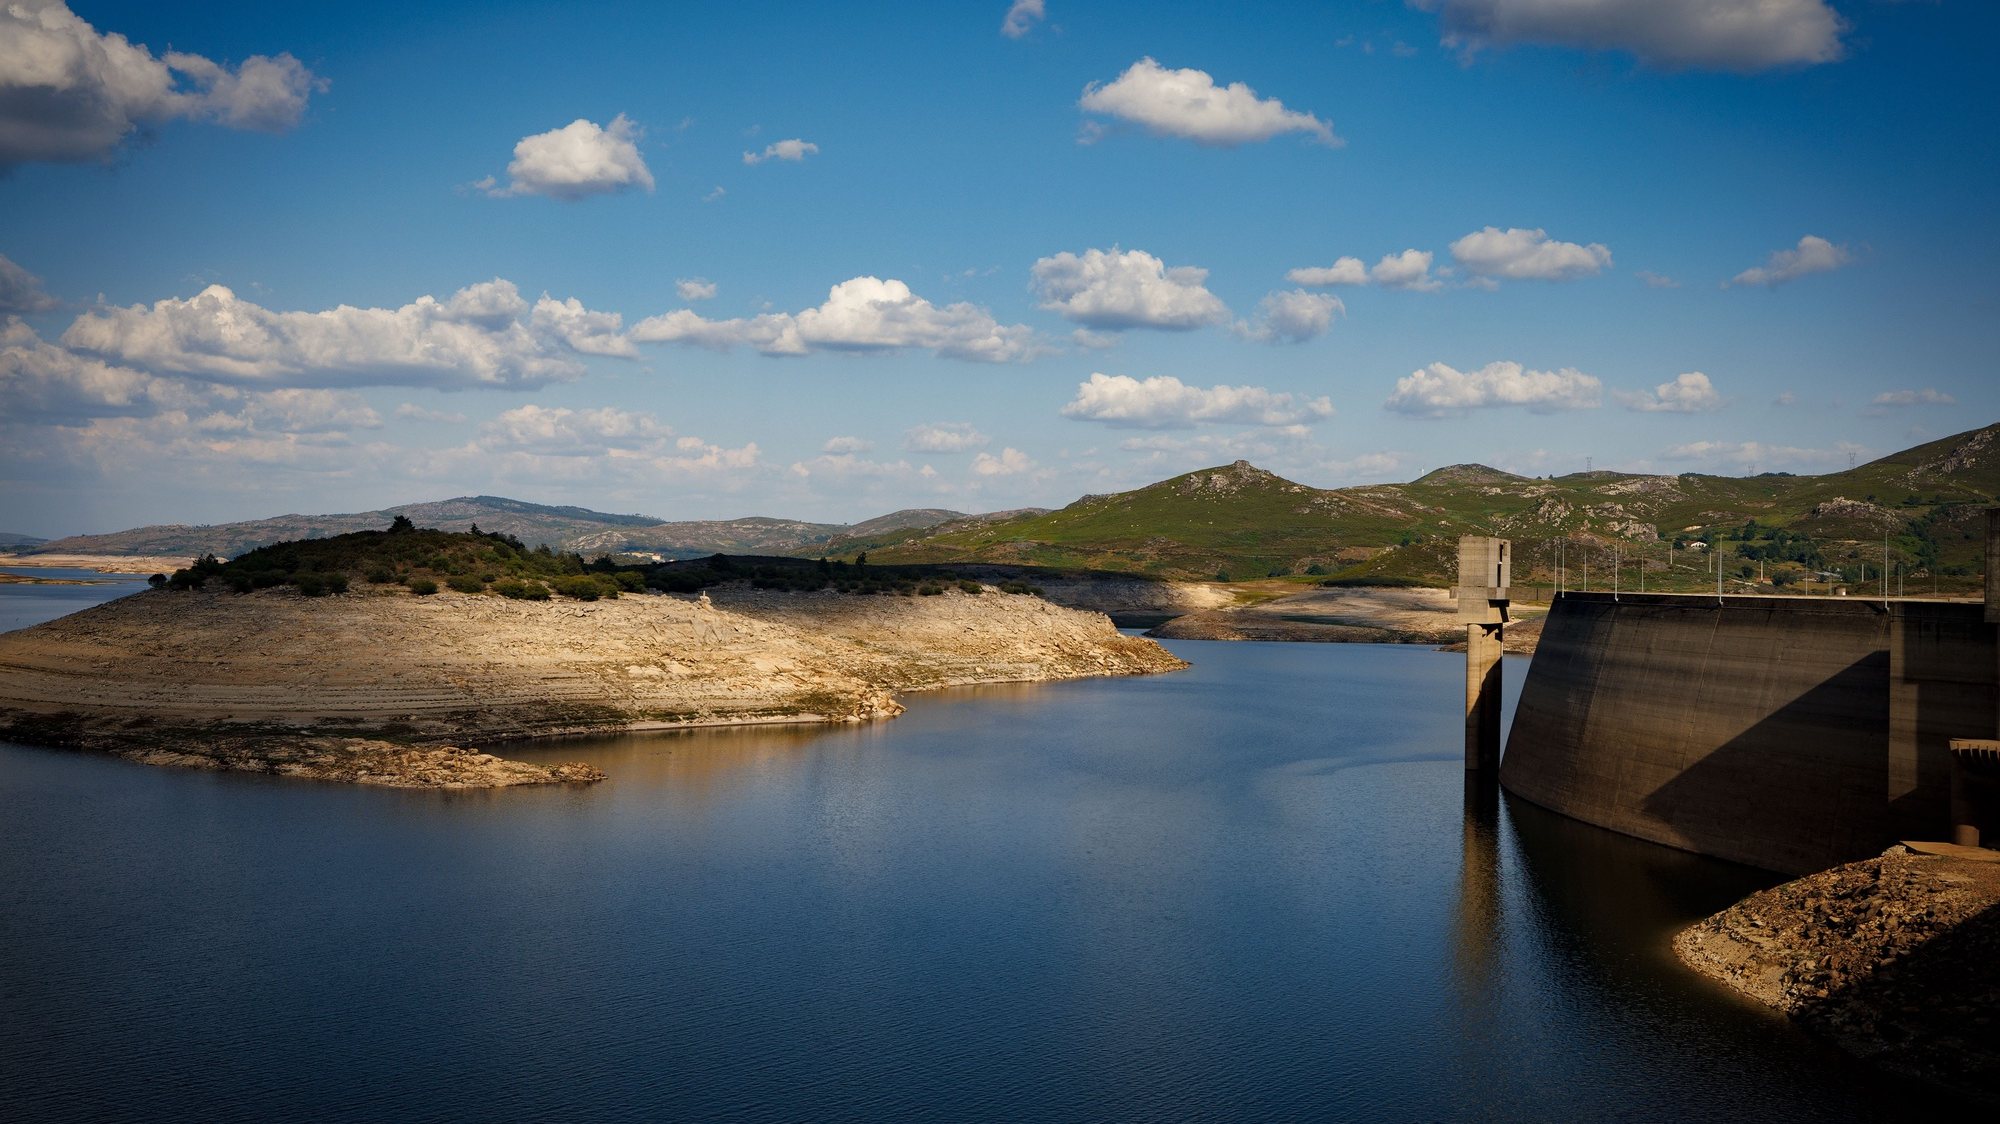 Efeitos da seca na Barragem Alto Rabagão, em Montalegre, 6 de julho de 2022. No Norte do país, as barragens do Alto-Lindoso e do Alto Rabagão estão com níveis de água historicamente baixos, prejudicando a agricultura e o turismo. PEDRO SARMENTO COSTA/LUSA